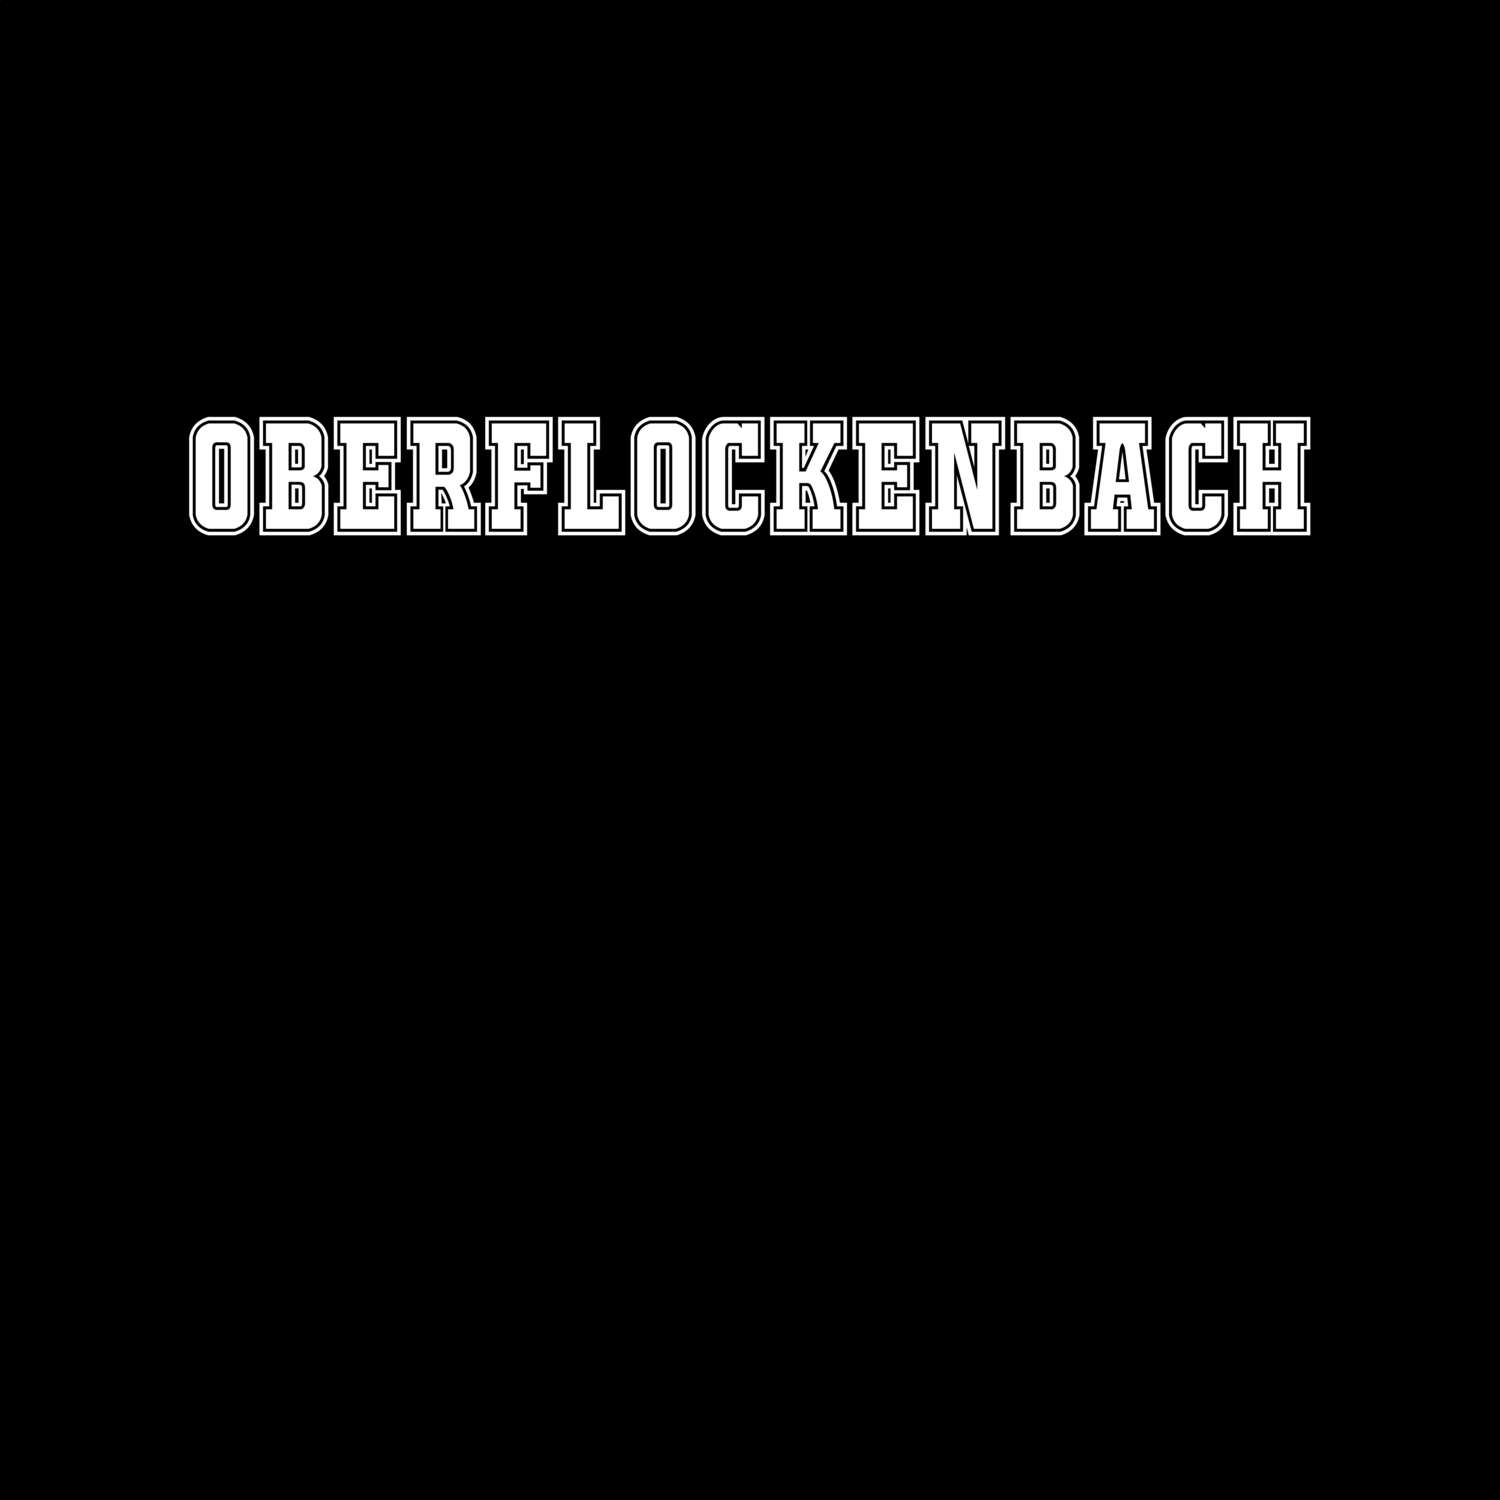 Oberflockenbach T-Shirt »Classic«